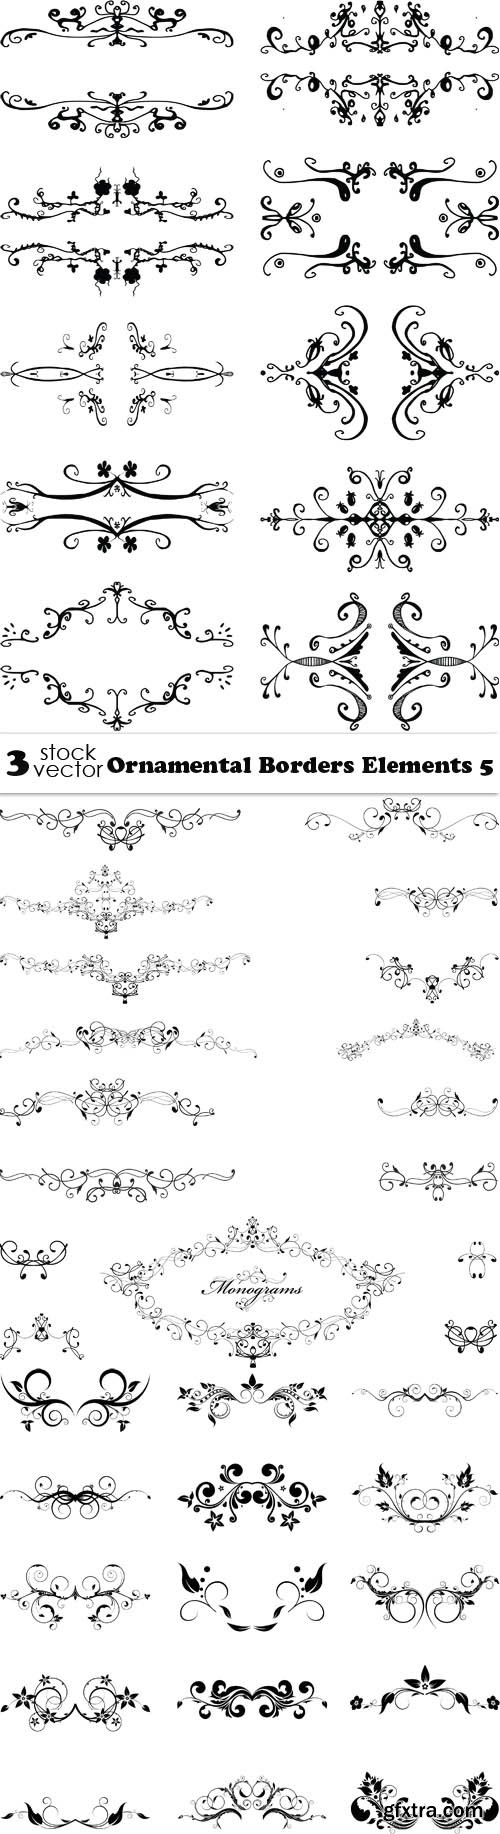 Vectors - Ornamental Borders Elements 5